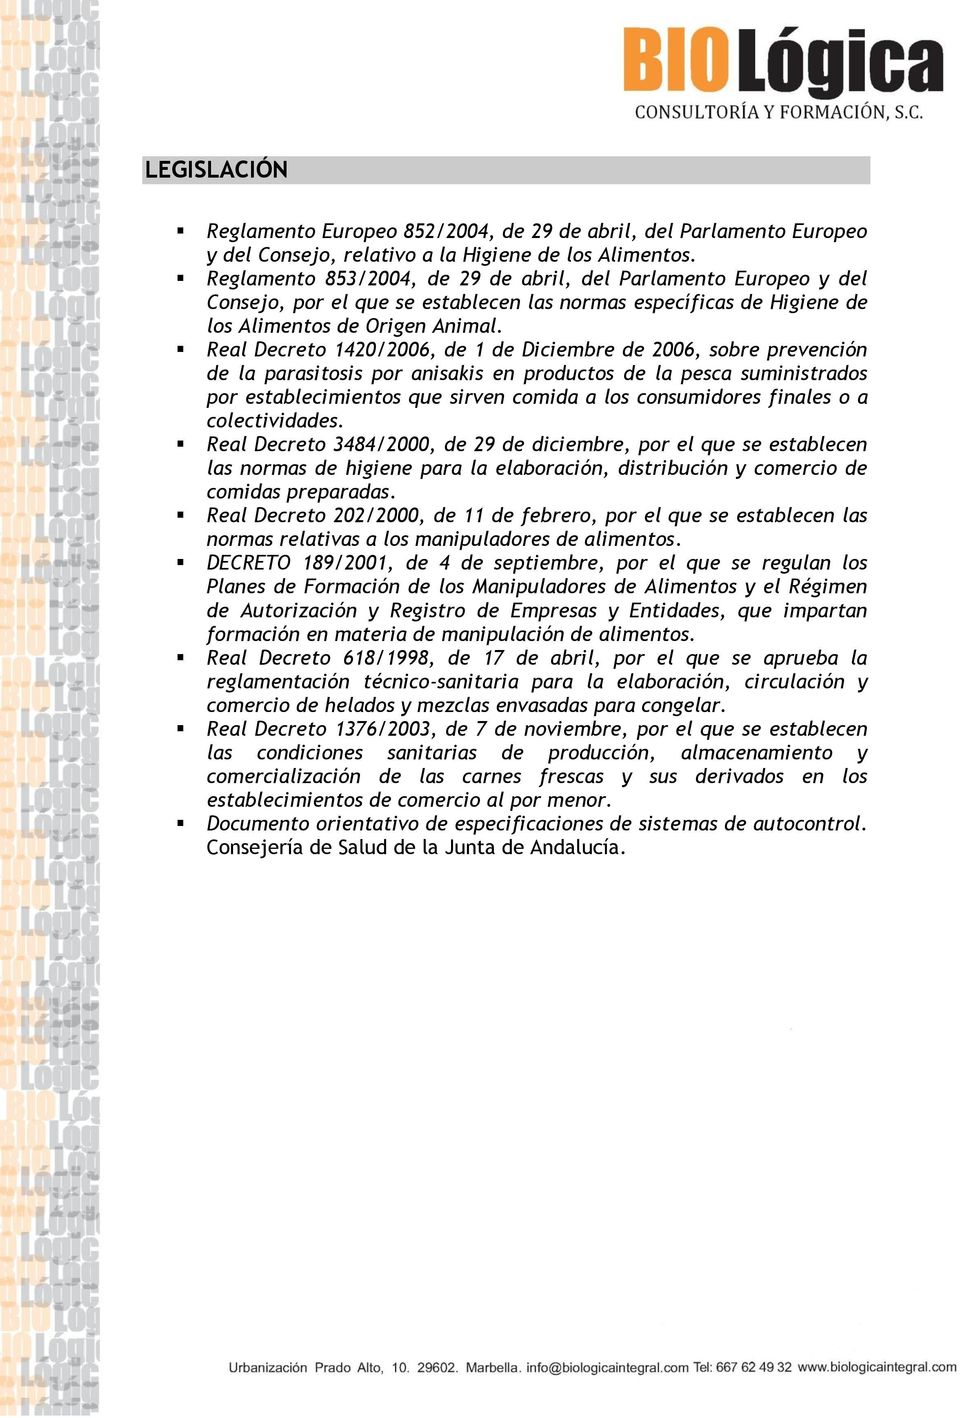 Real Decreto 1420/2006, de 1 de Diciembre de 2006, sobre prevención de la parasitosis por anisakis en productos de la pesca suministrados por establecimientos que sirven comida a los consumidores